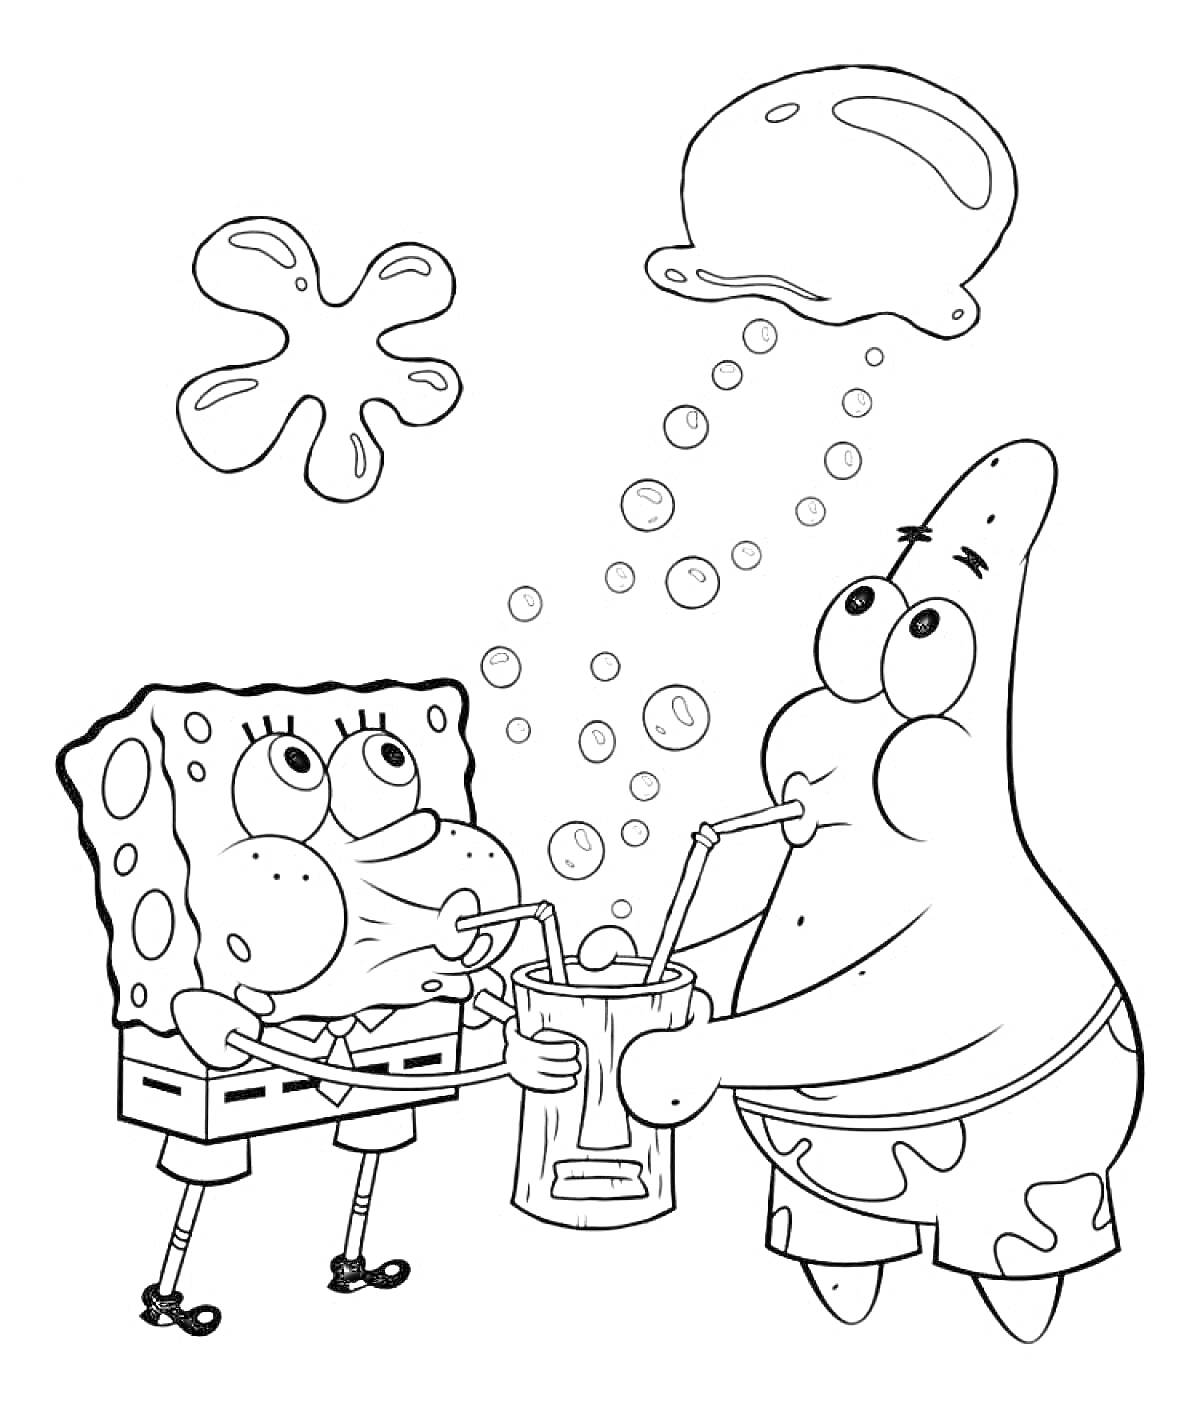 Раскраска Губка Боб Квадратные Штаны и Патрик Стар пьют напитки через трубочки, наблюдая за пузырями